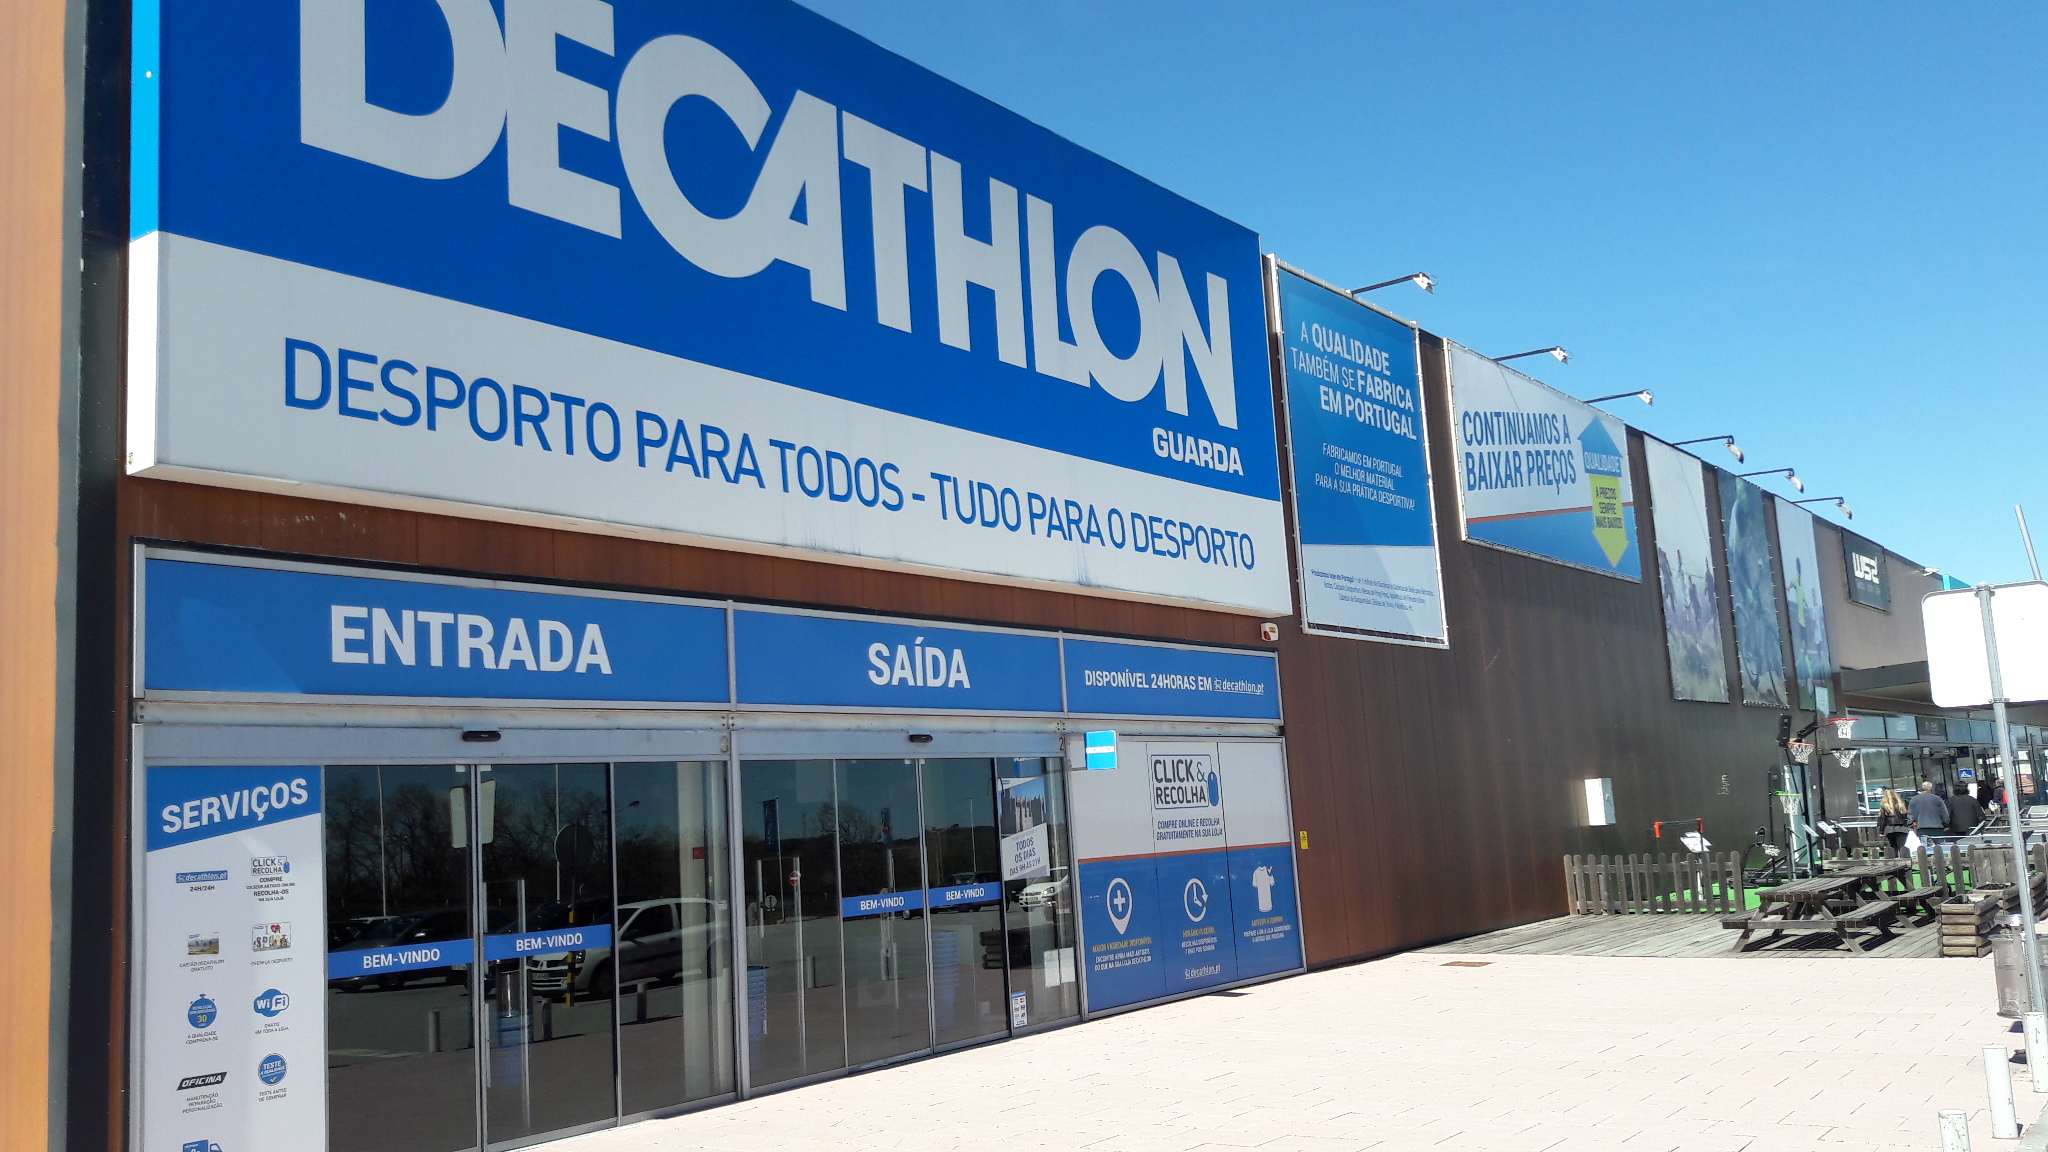 Decathlon em Portugal: dezenas de vagas em nova loja no Porto